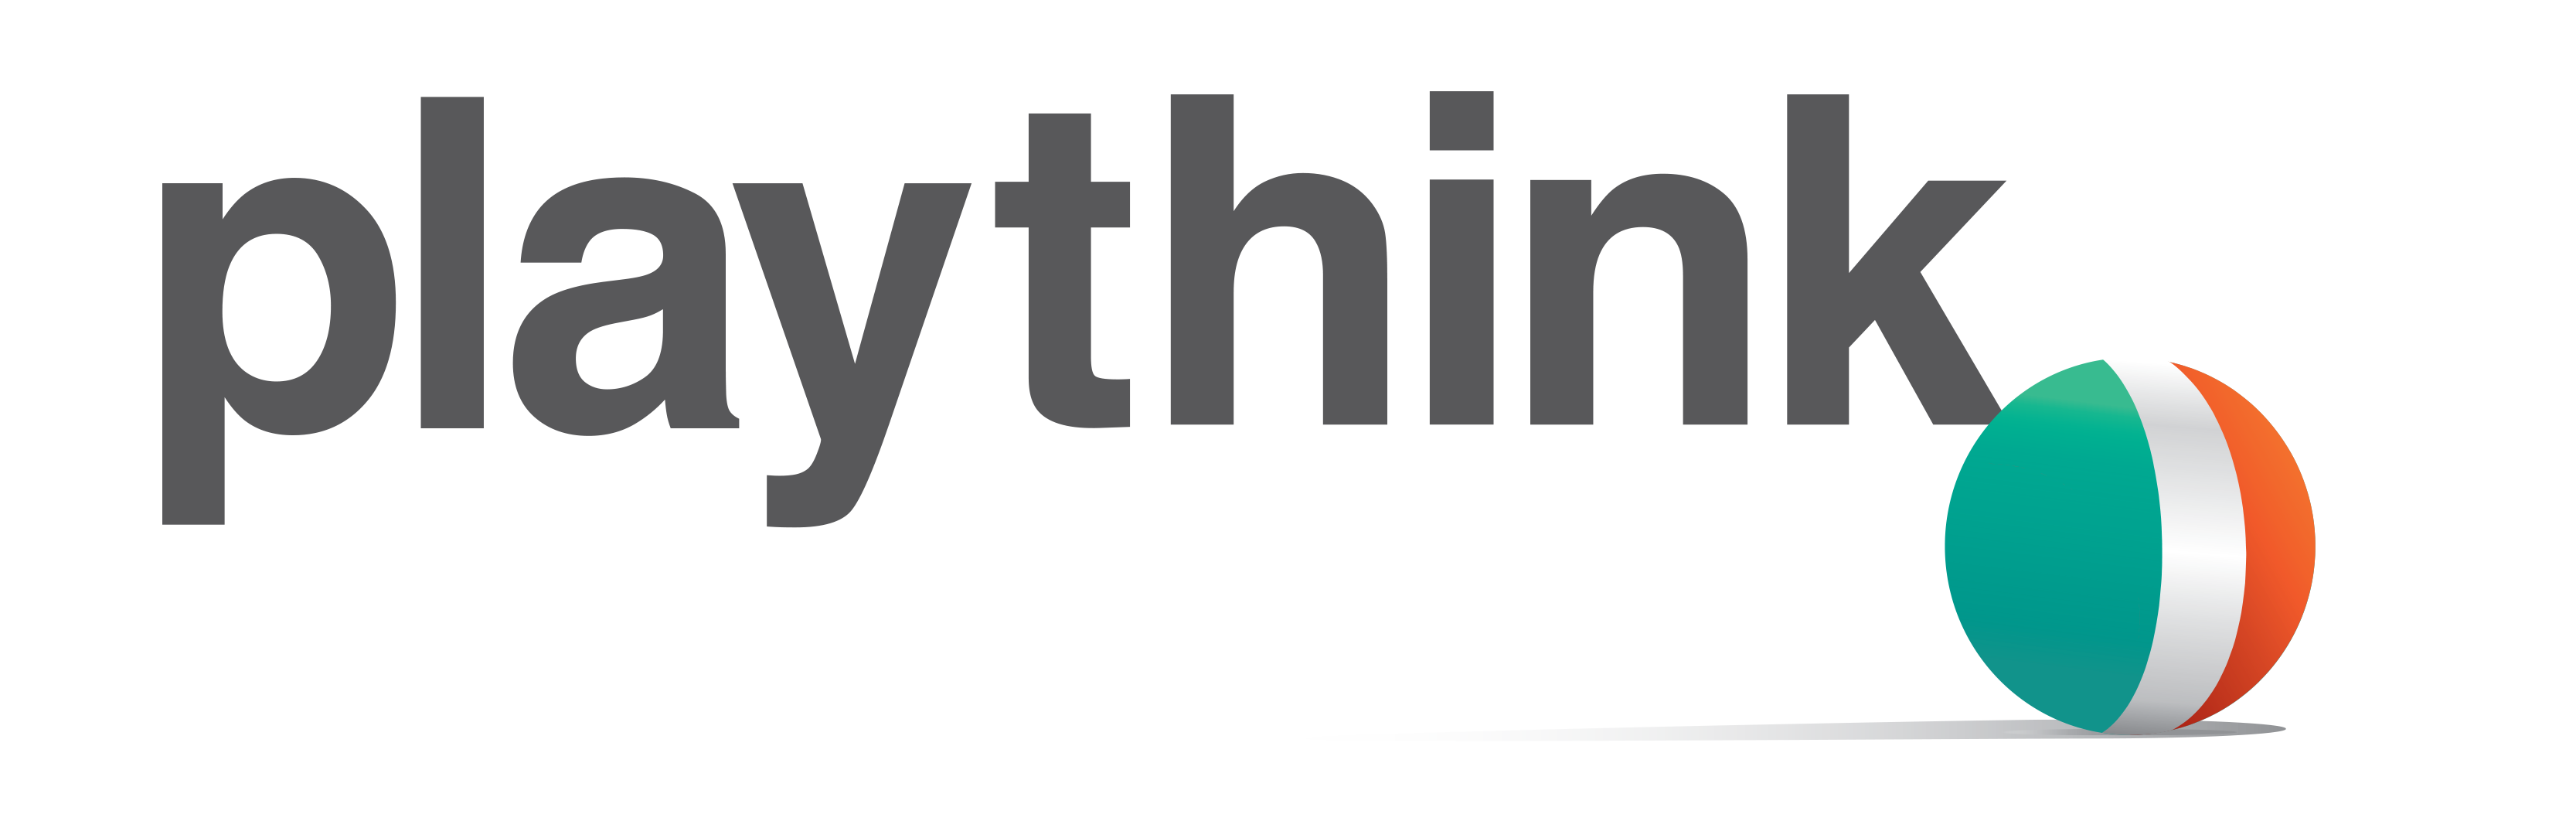 playthink logo